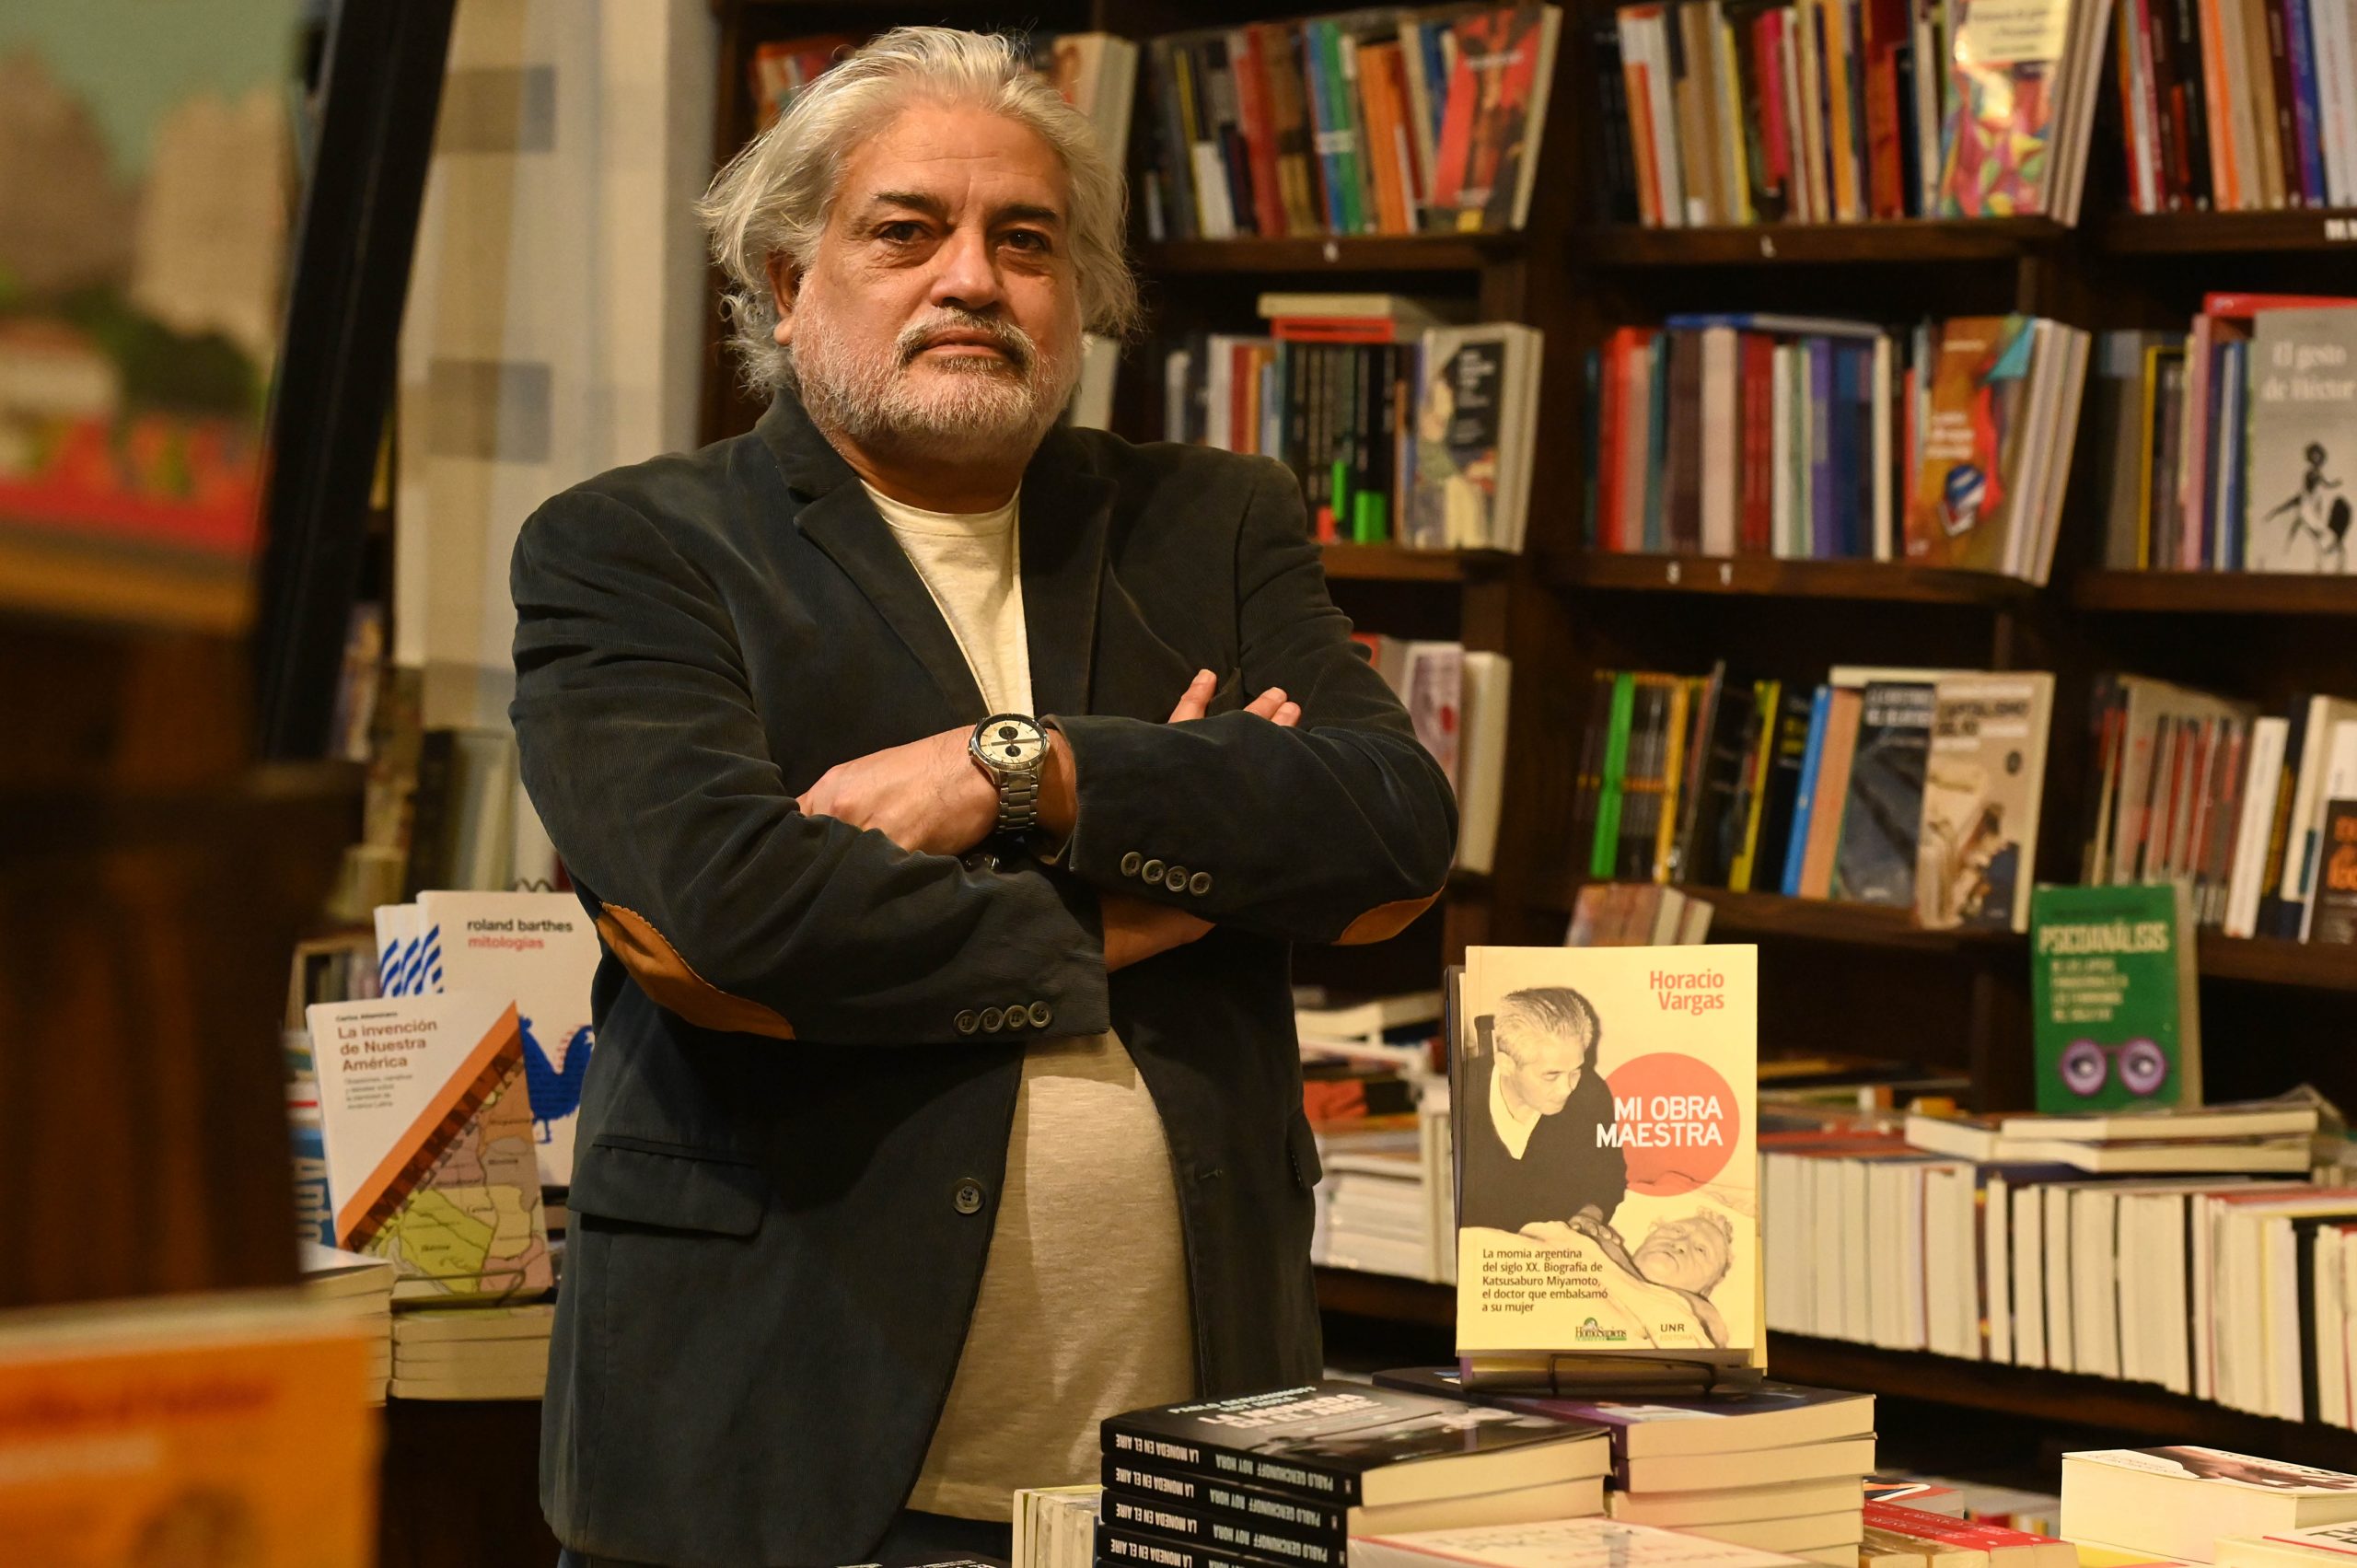 El escritor y periodista de Página/12, Horacio Vargas, presenta sus libros “Gente con swing II” y “Mi obra maestra” en Mar del Plata